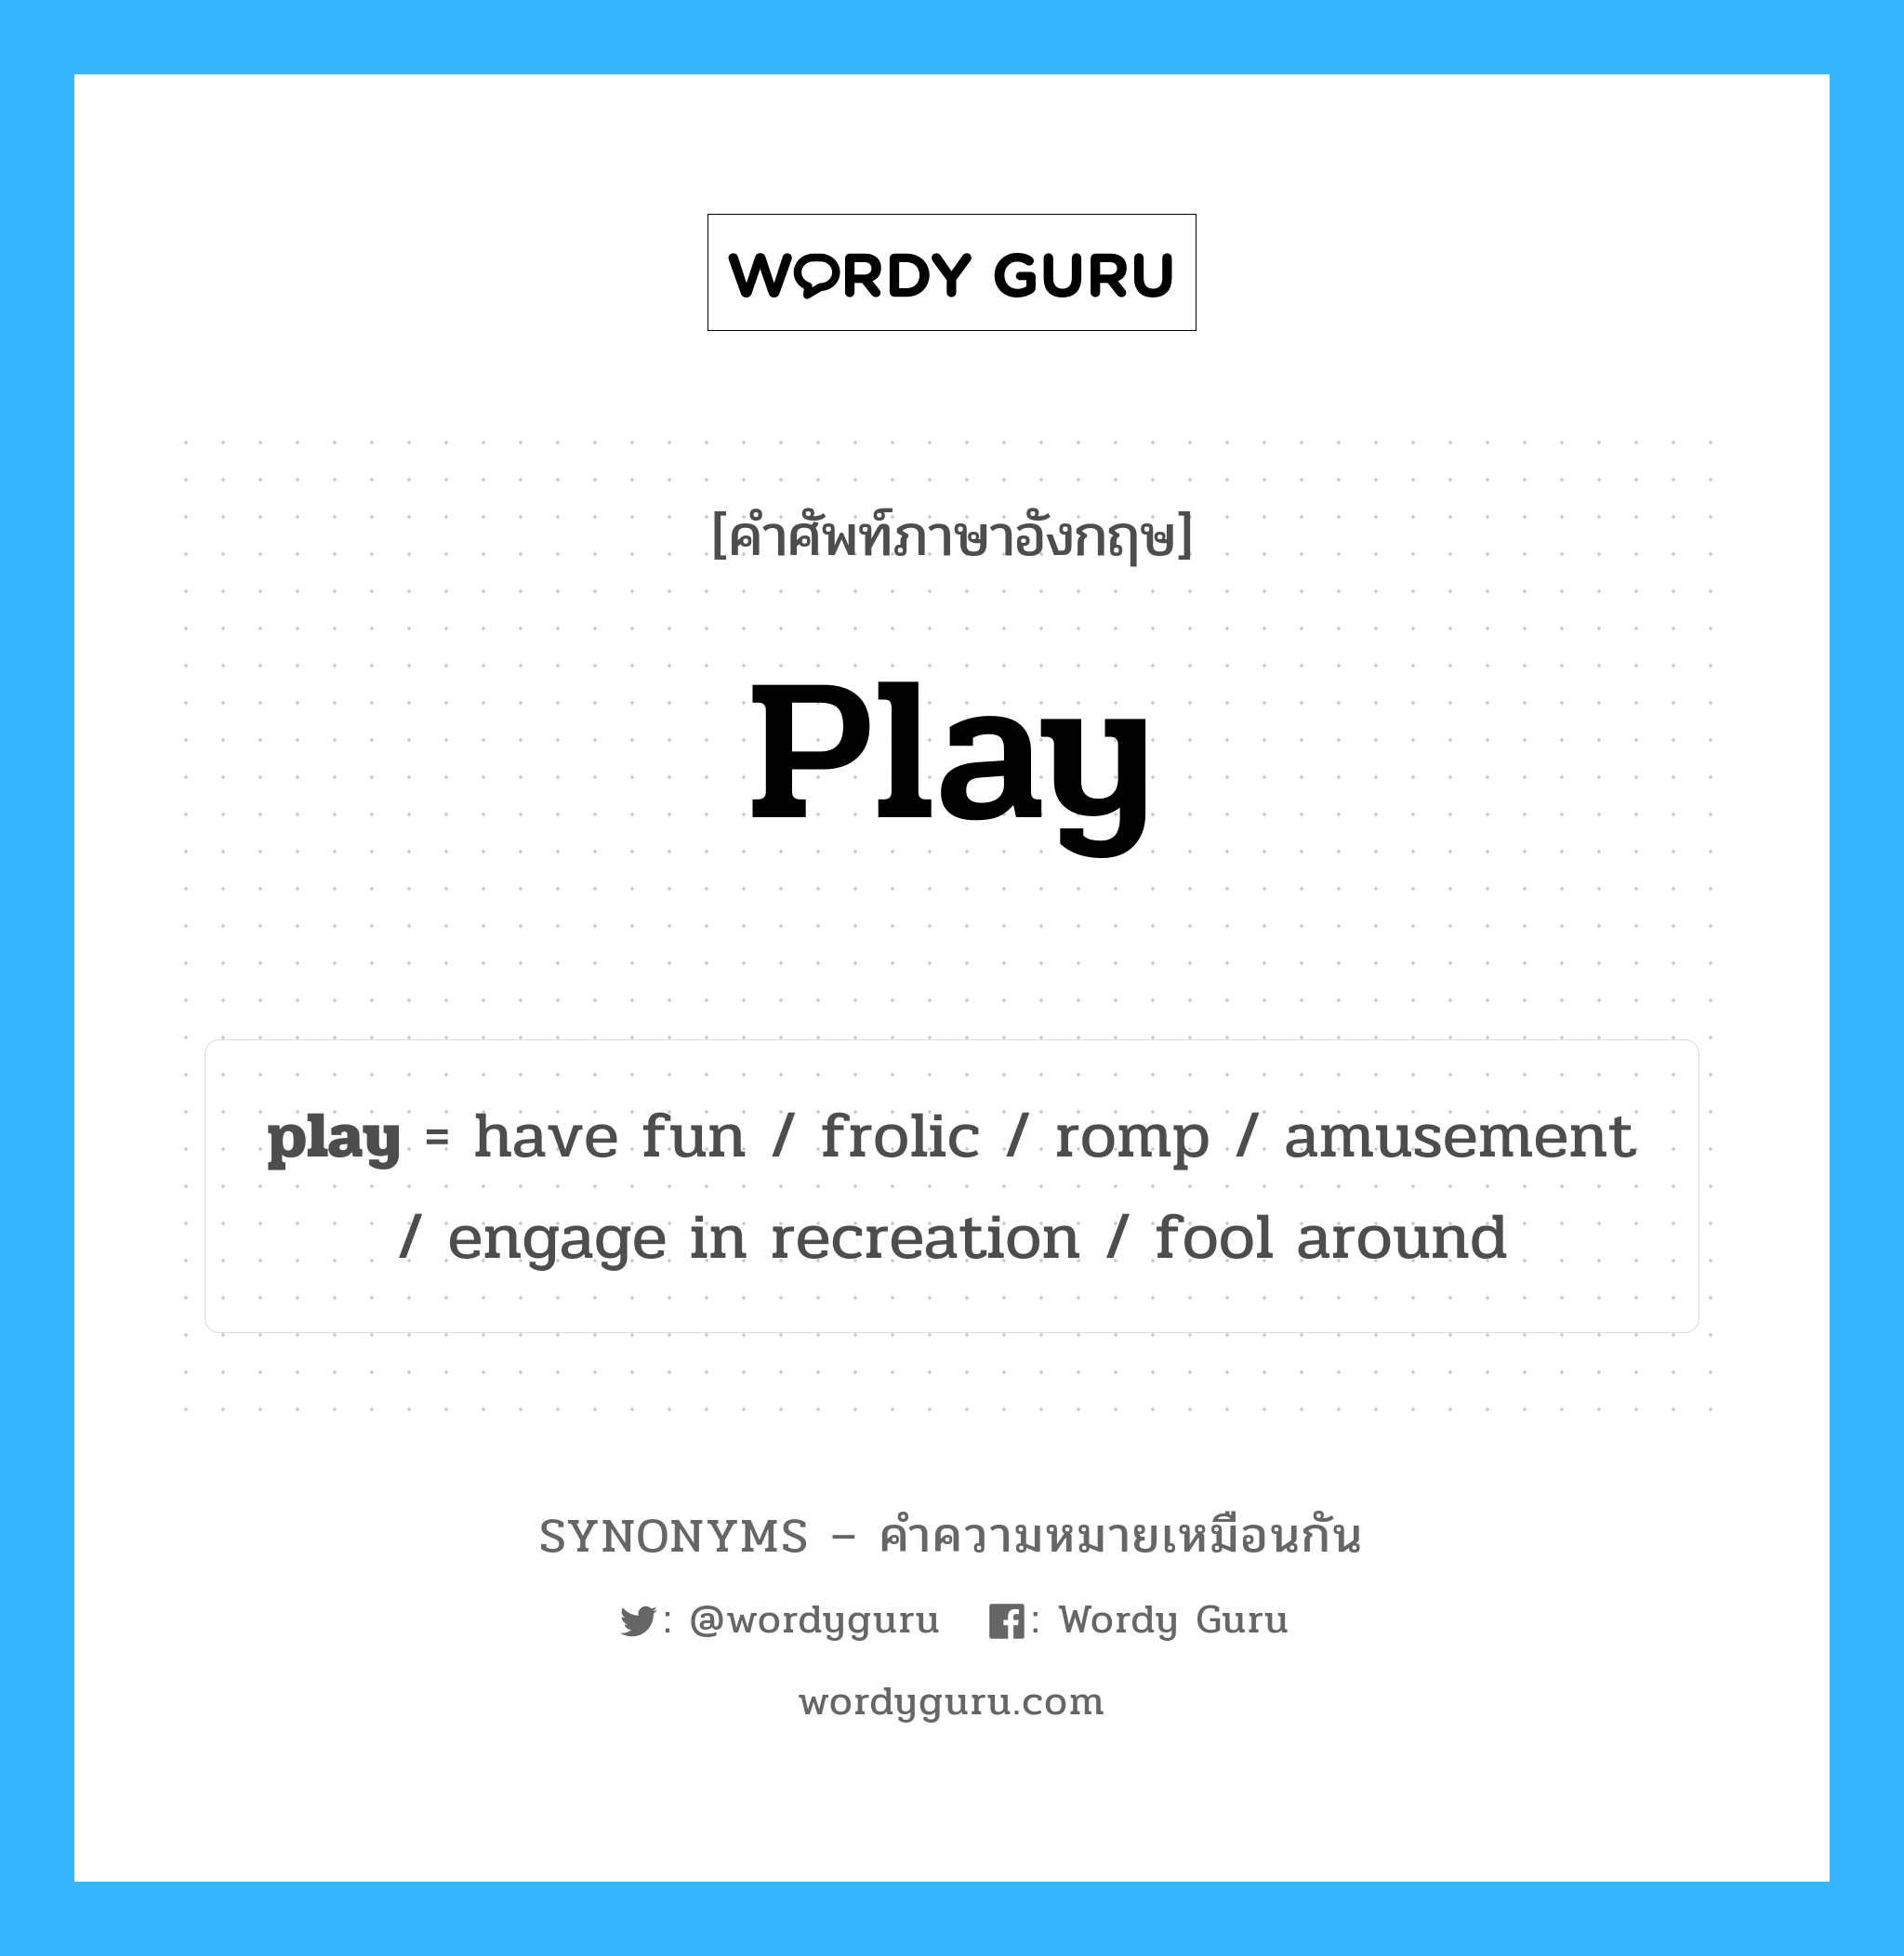 romp เป็นหนึ่งใน play และมีคำอื่น ๆ อีกดังนี้, คำศัพท์ภาษาอังกฤษ romp ความหมายคล้ายกันกับ play แปลว่า วิ่งเล่น หมวด play